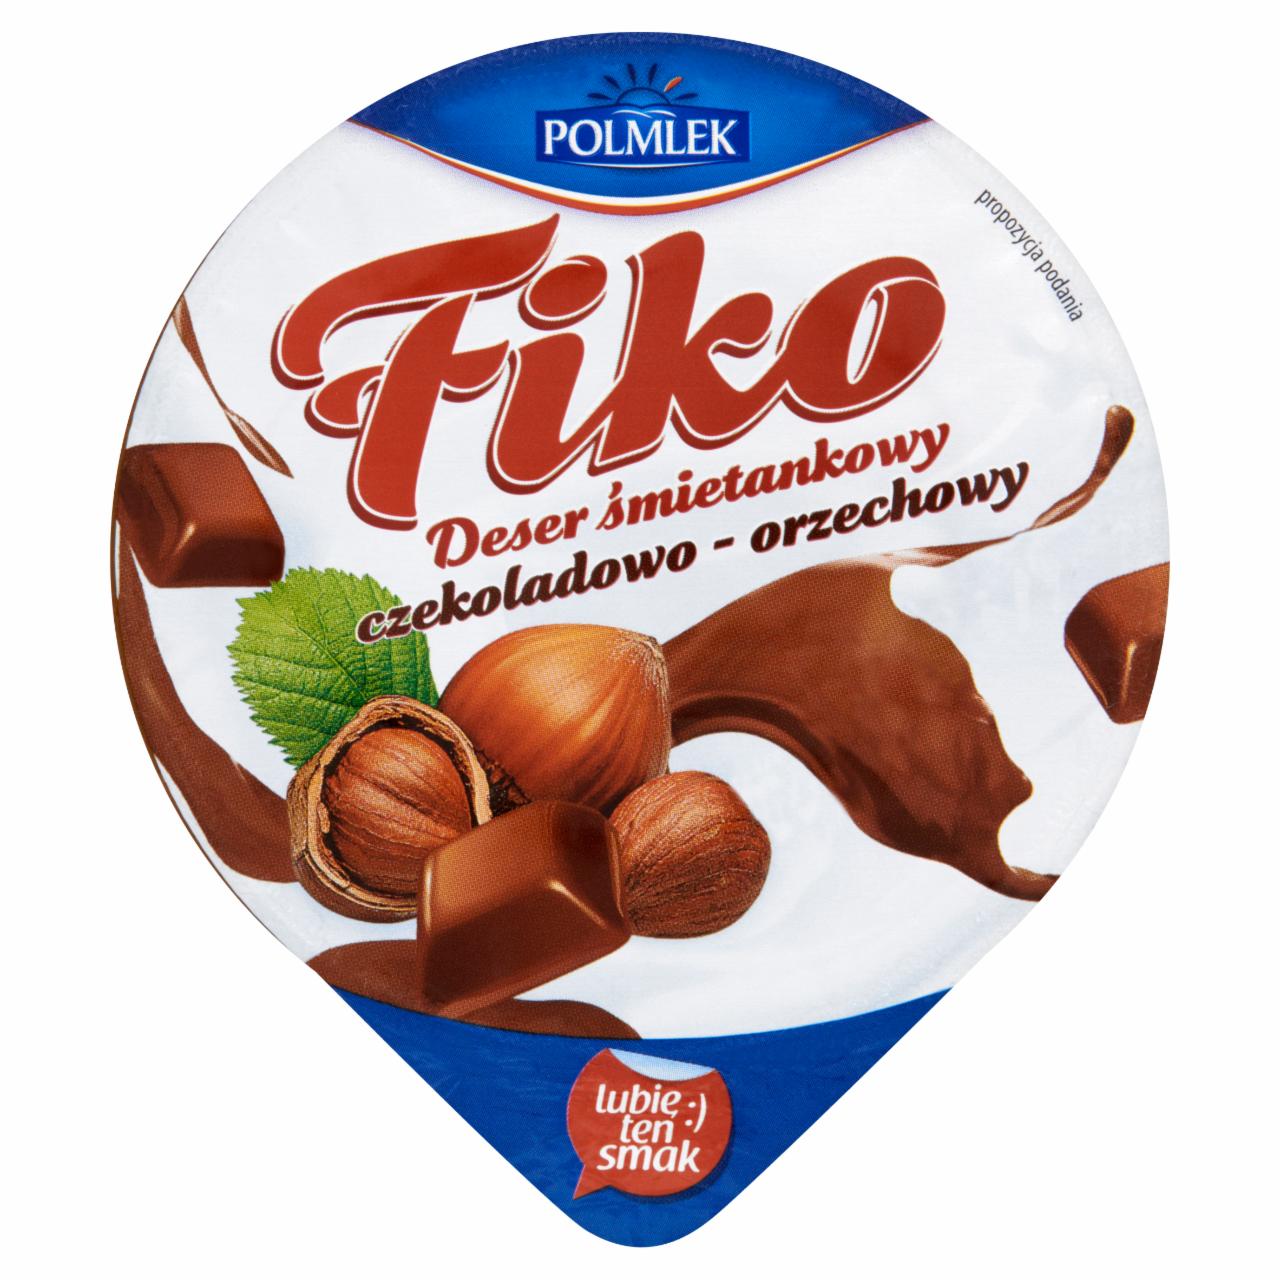 Zdjęcia - Polmlek Fiko Deser śmietankowy czekoladowo-orzechowy 120 g